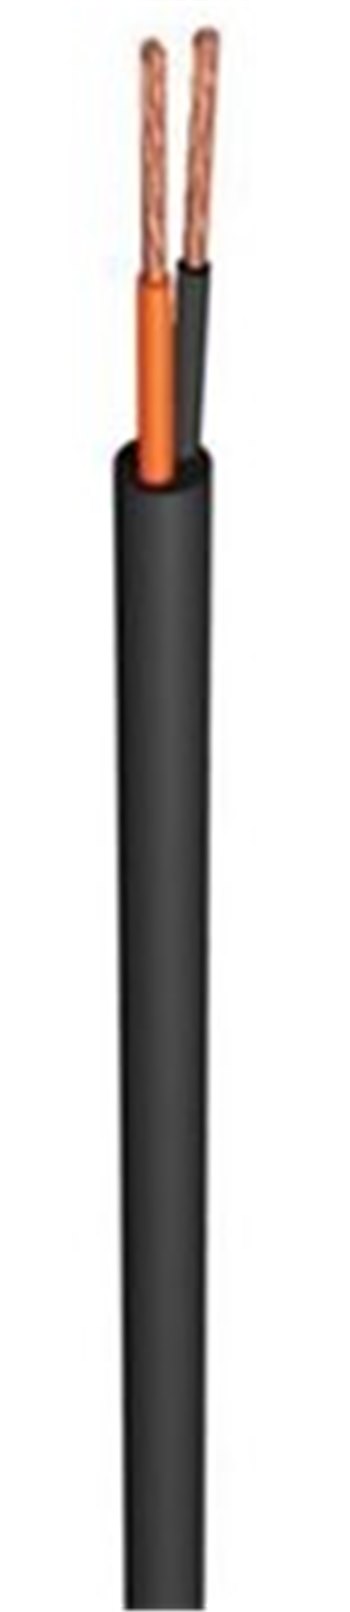 Акустический кабель BX 3 двухжильный, чёрный (2x1.5) - вид 1 миниатюра